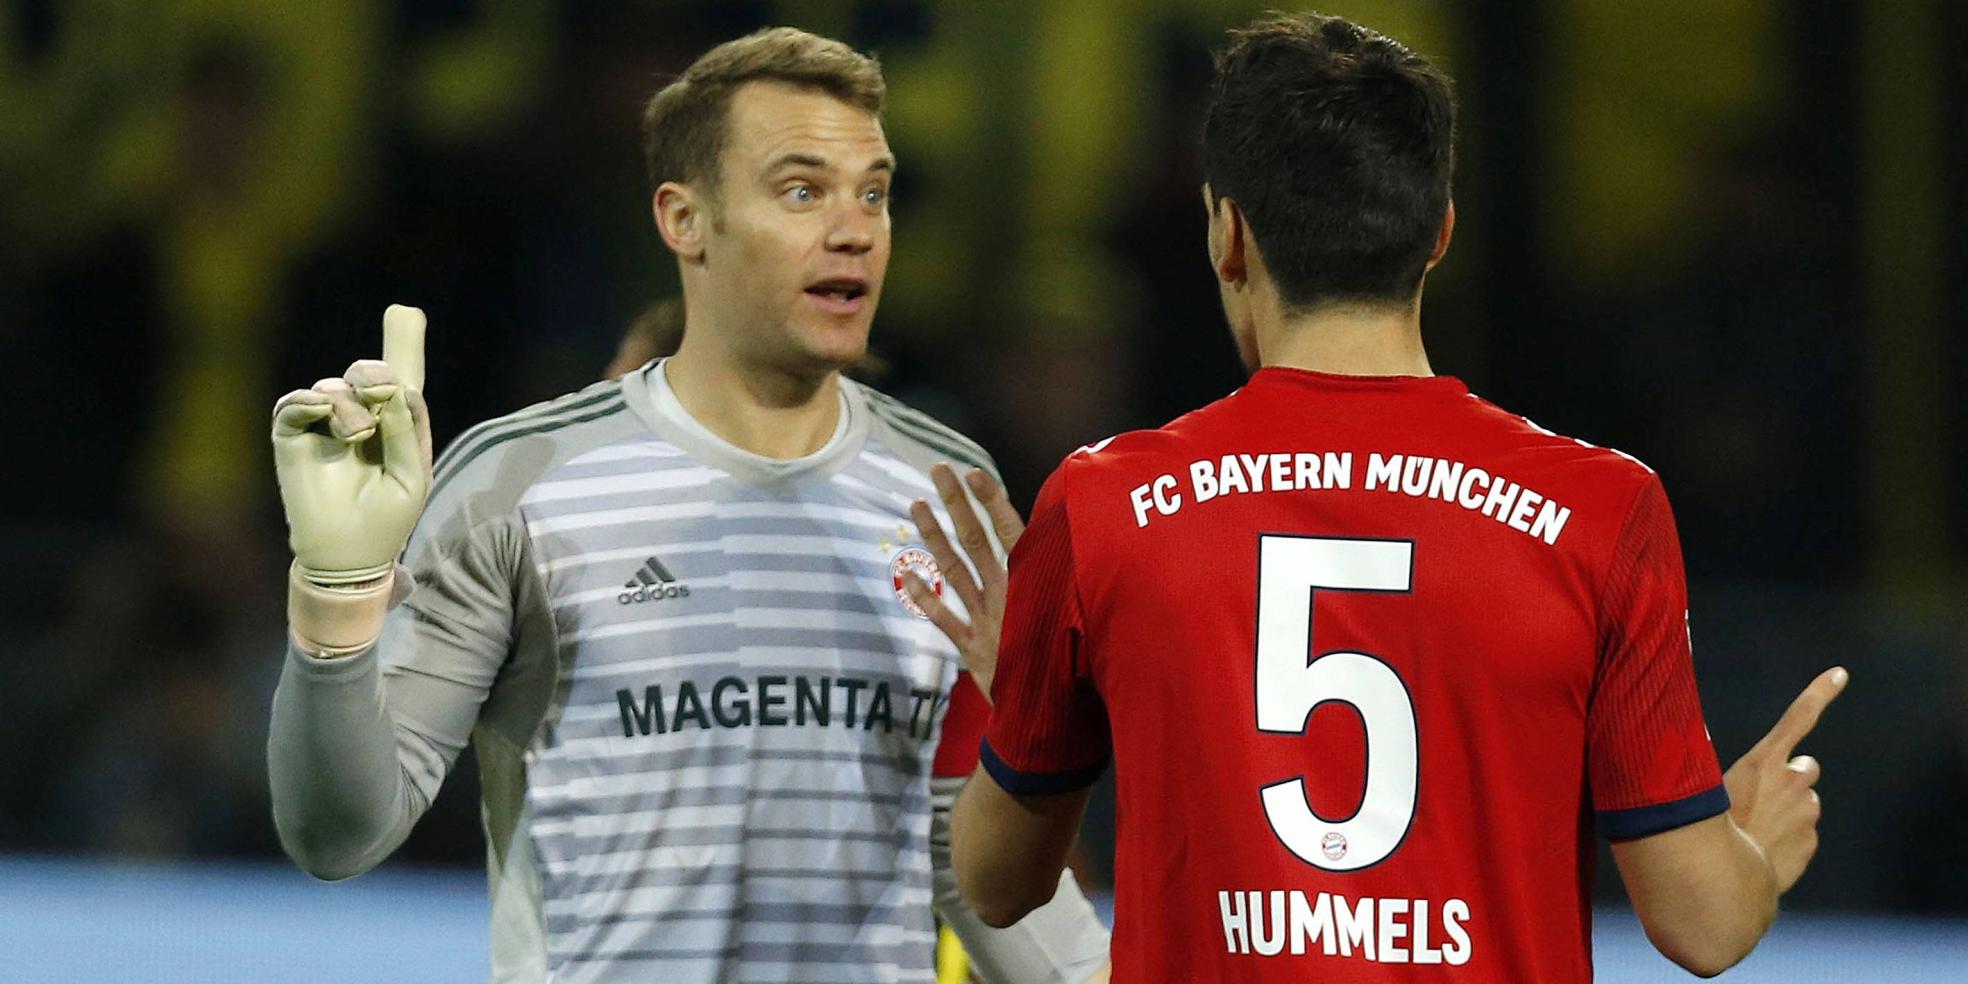 Manuel Neuer und Mats Hummels vom FC Bayern München